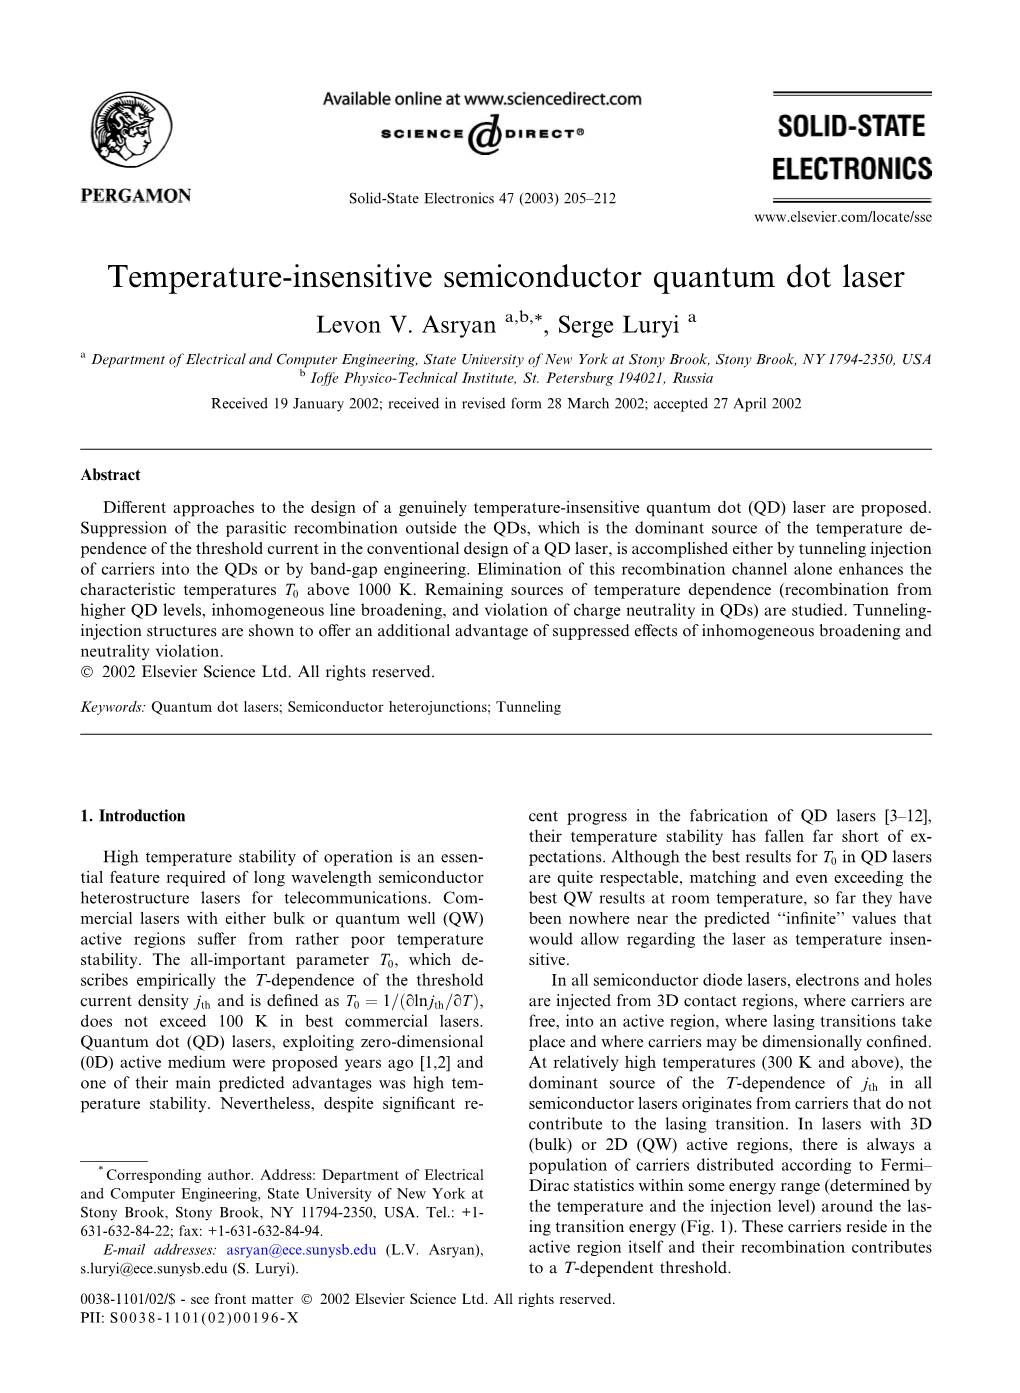 Temperature-Insensitive Semiconductor Quantum Dot Laser Levon V